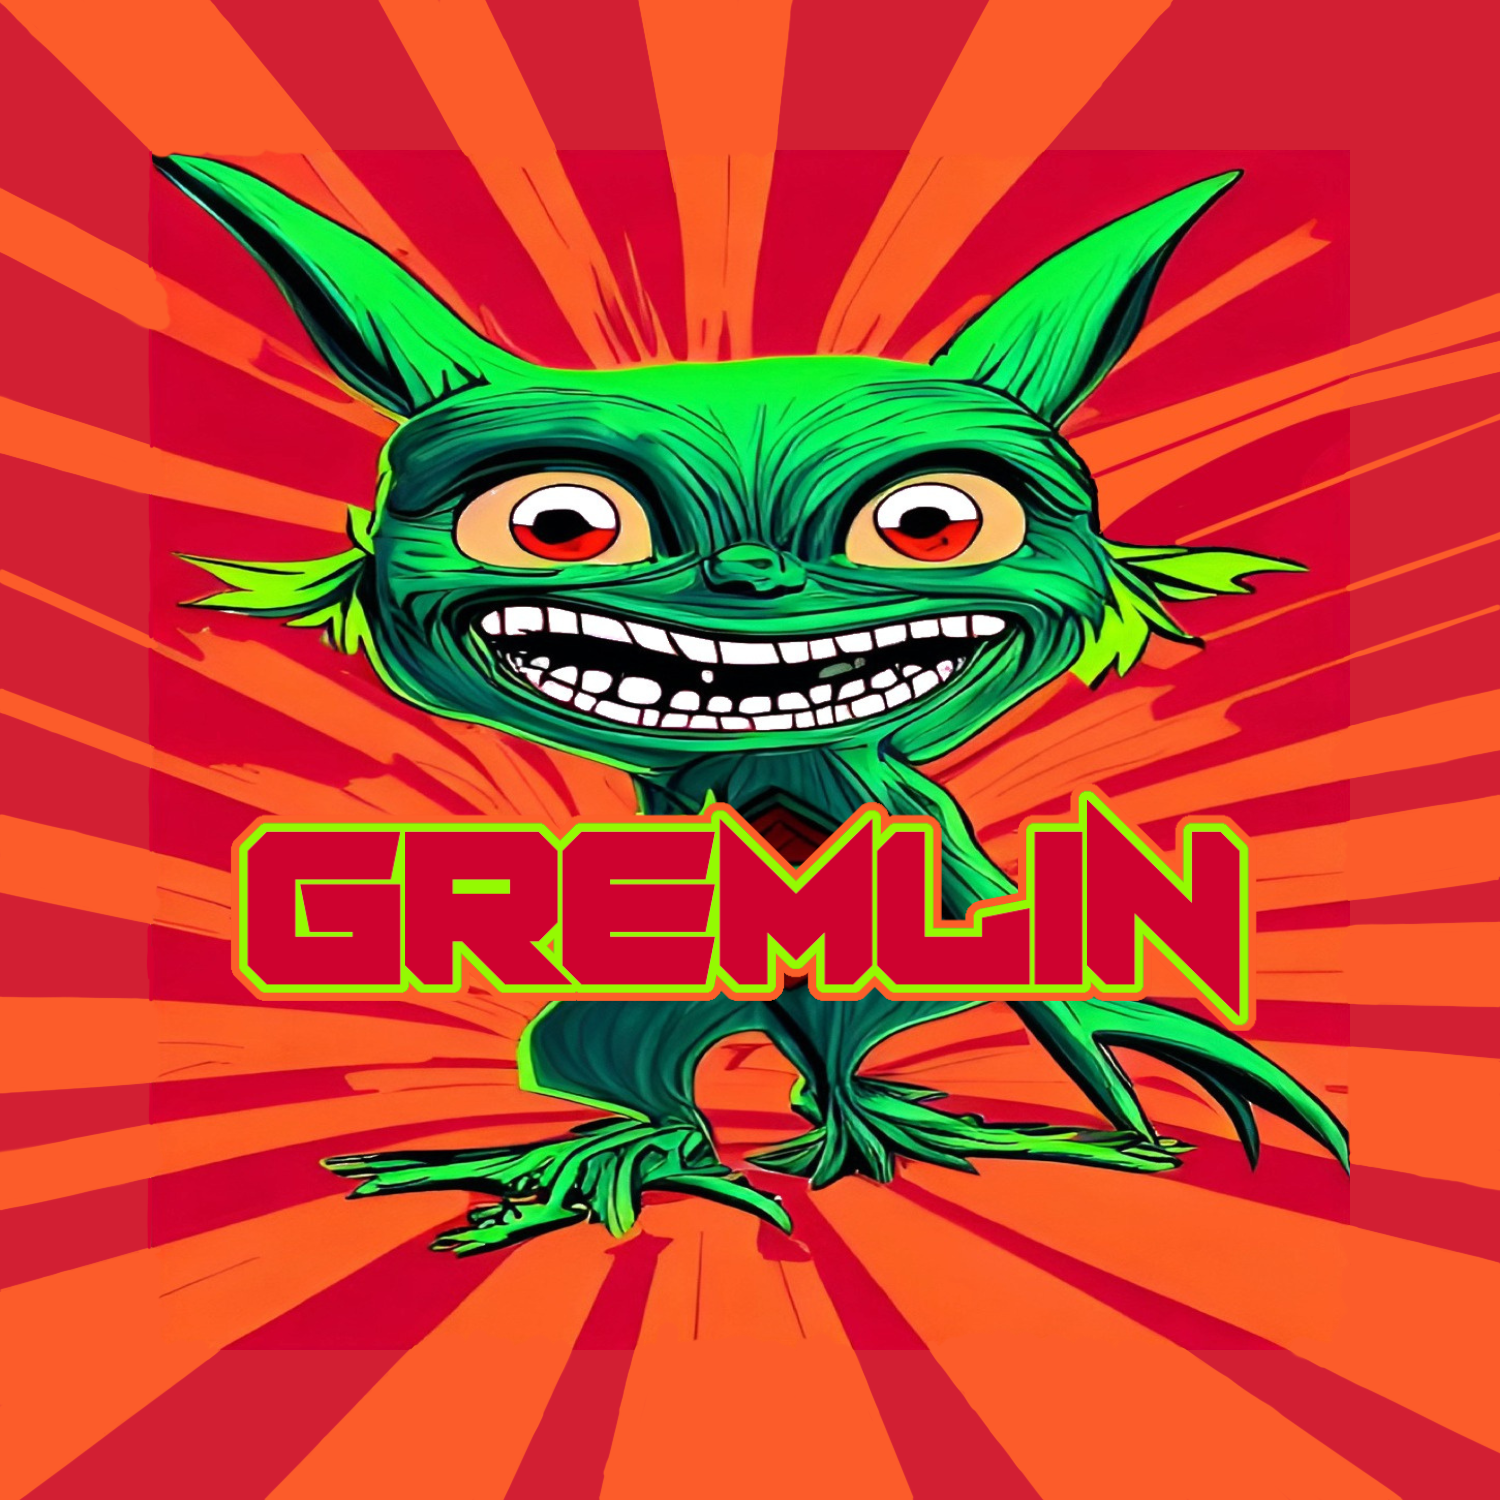 Gremlin